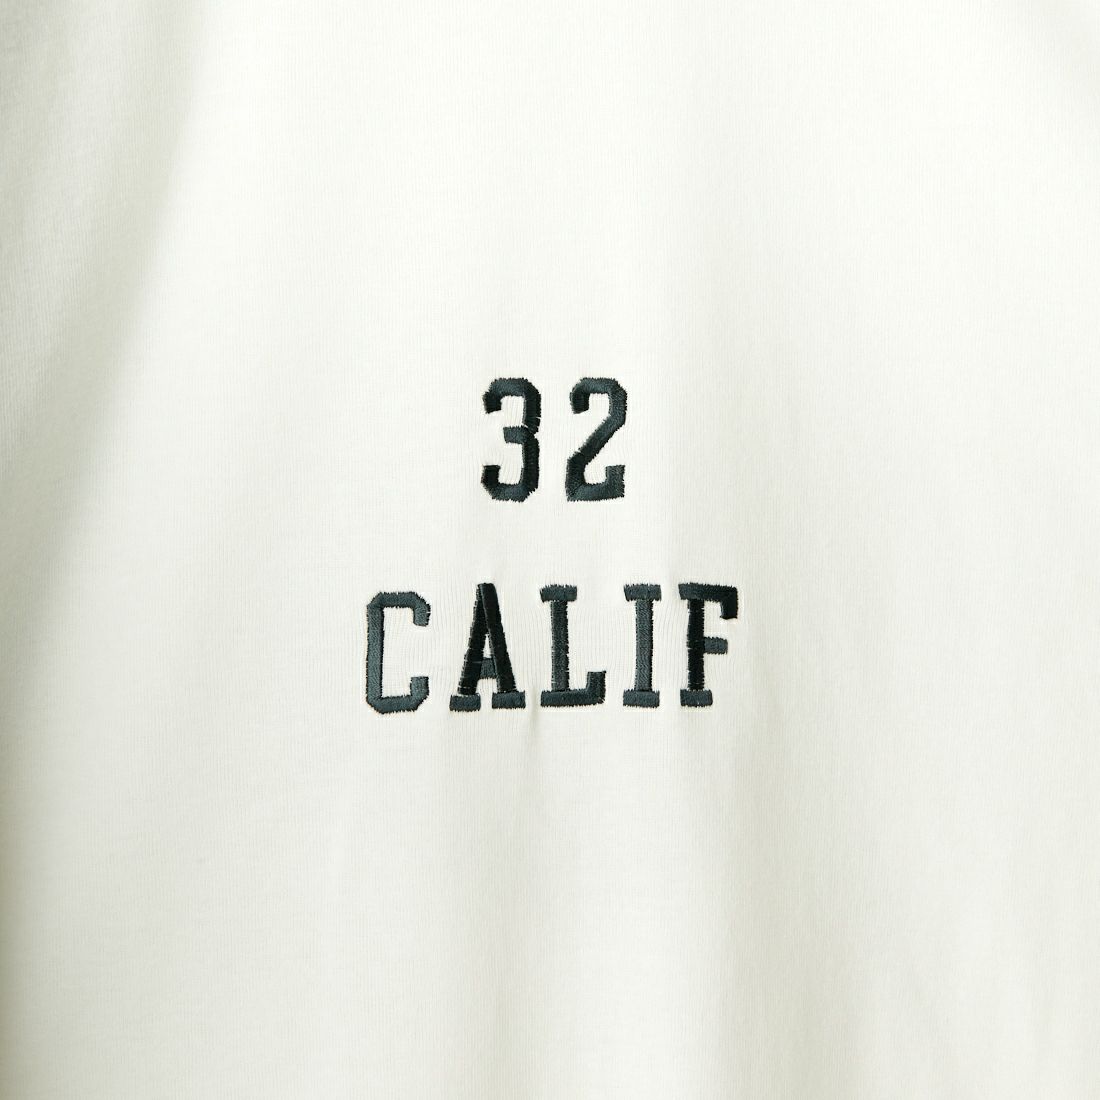 HELLO CALIF [ハローカリフ] スラブベースボールTシャツ [641521] OFF WHT